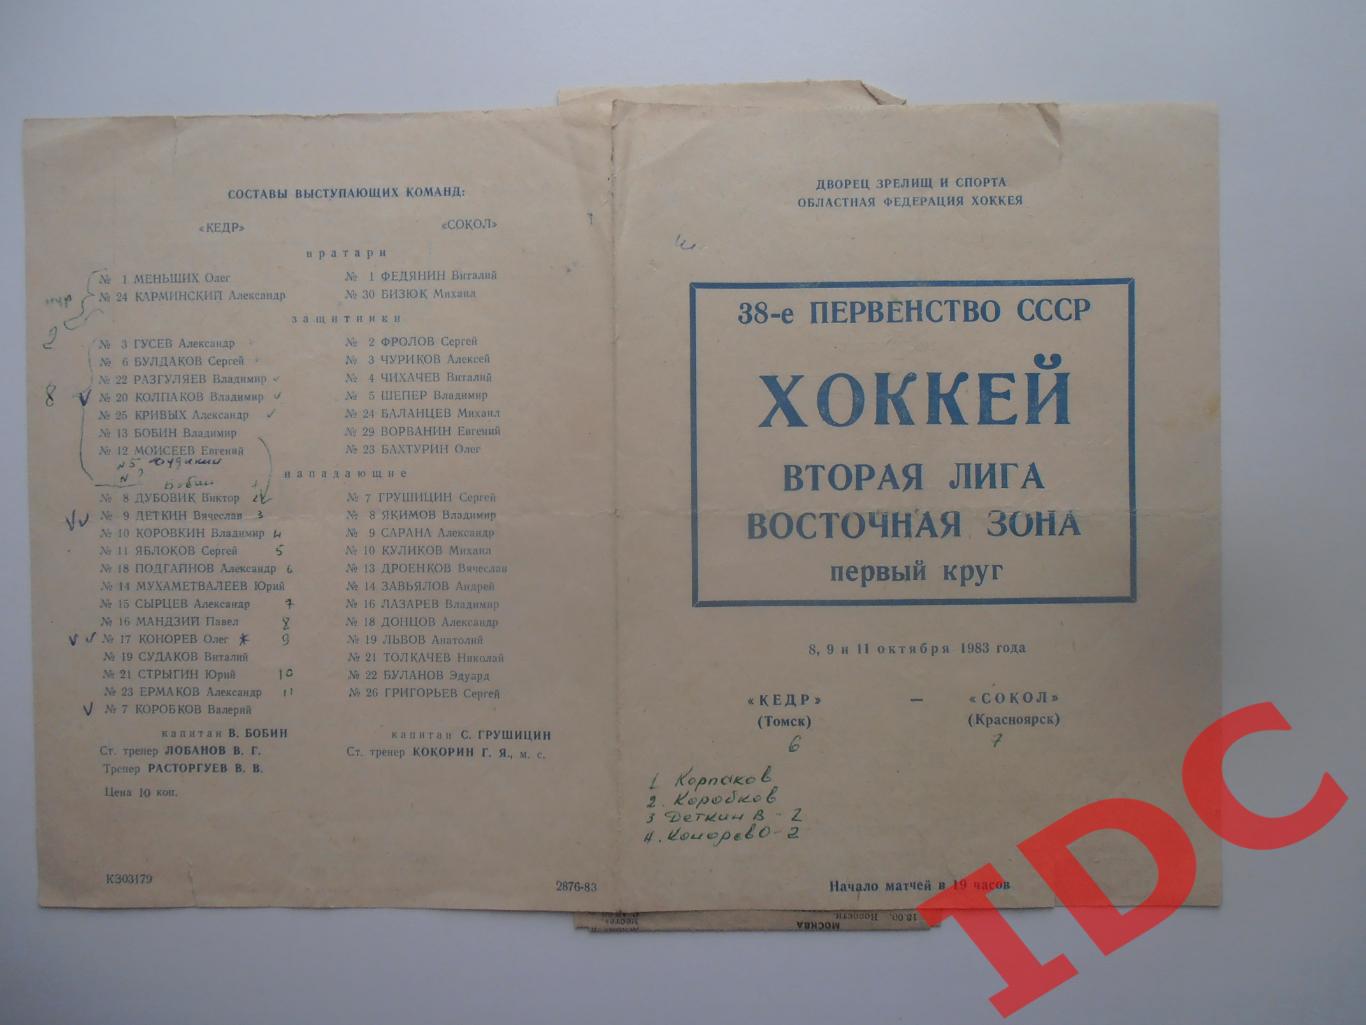 Кедр Томск-Сокол Красноярск 8,9,11 октября 1983 + 2 отчета